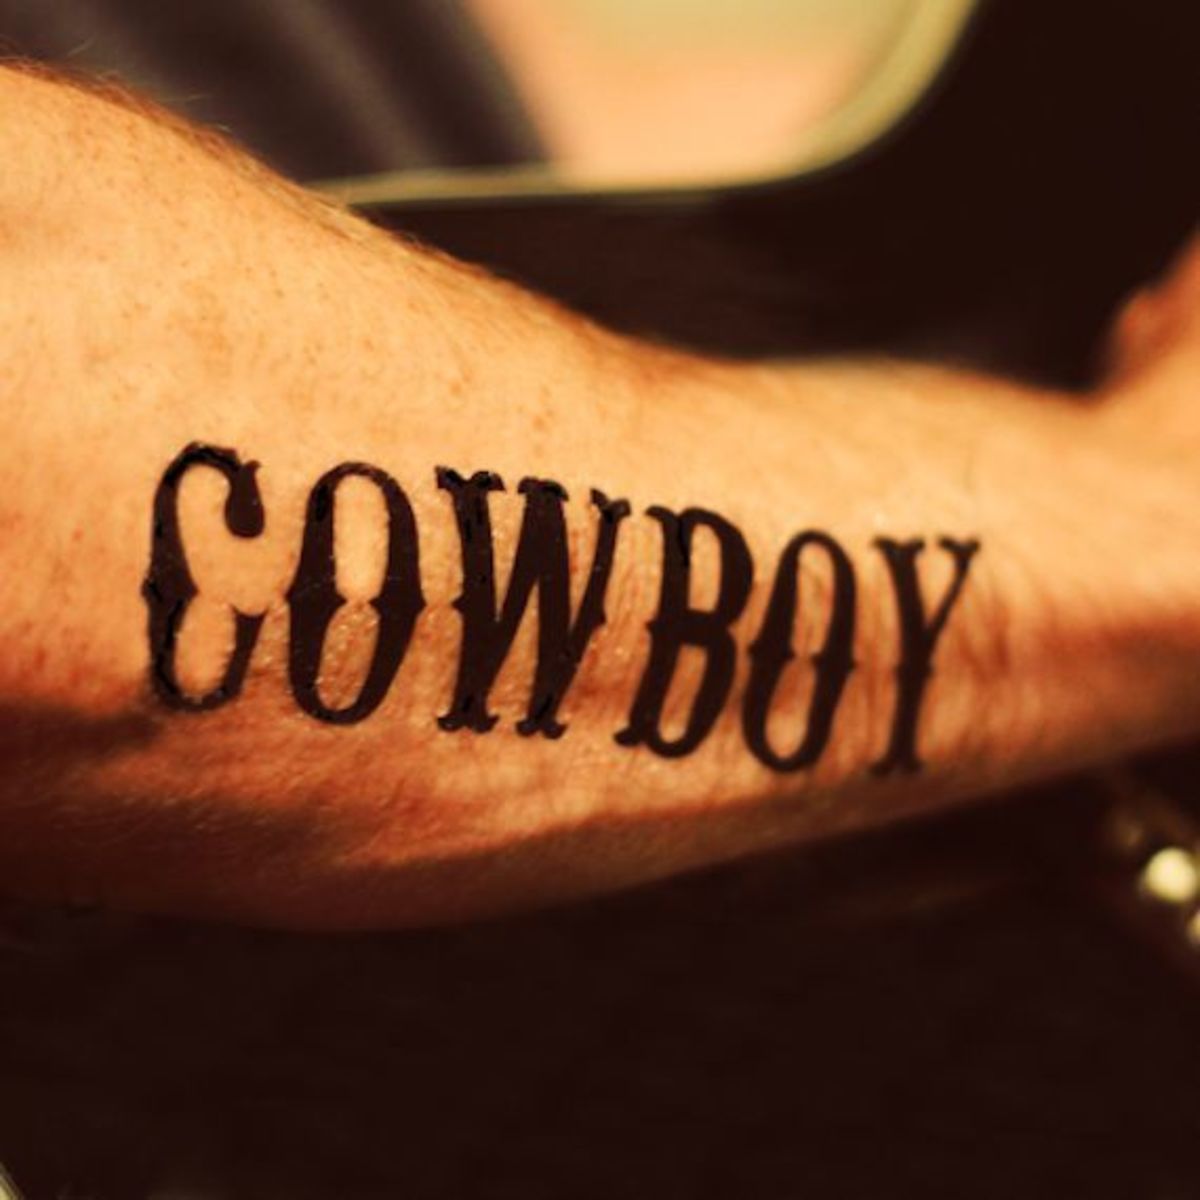 Cowboy Arm Tattoo